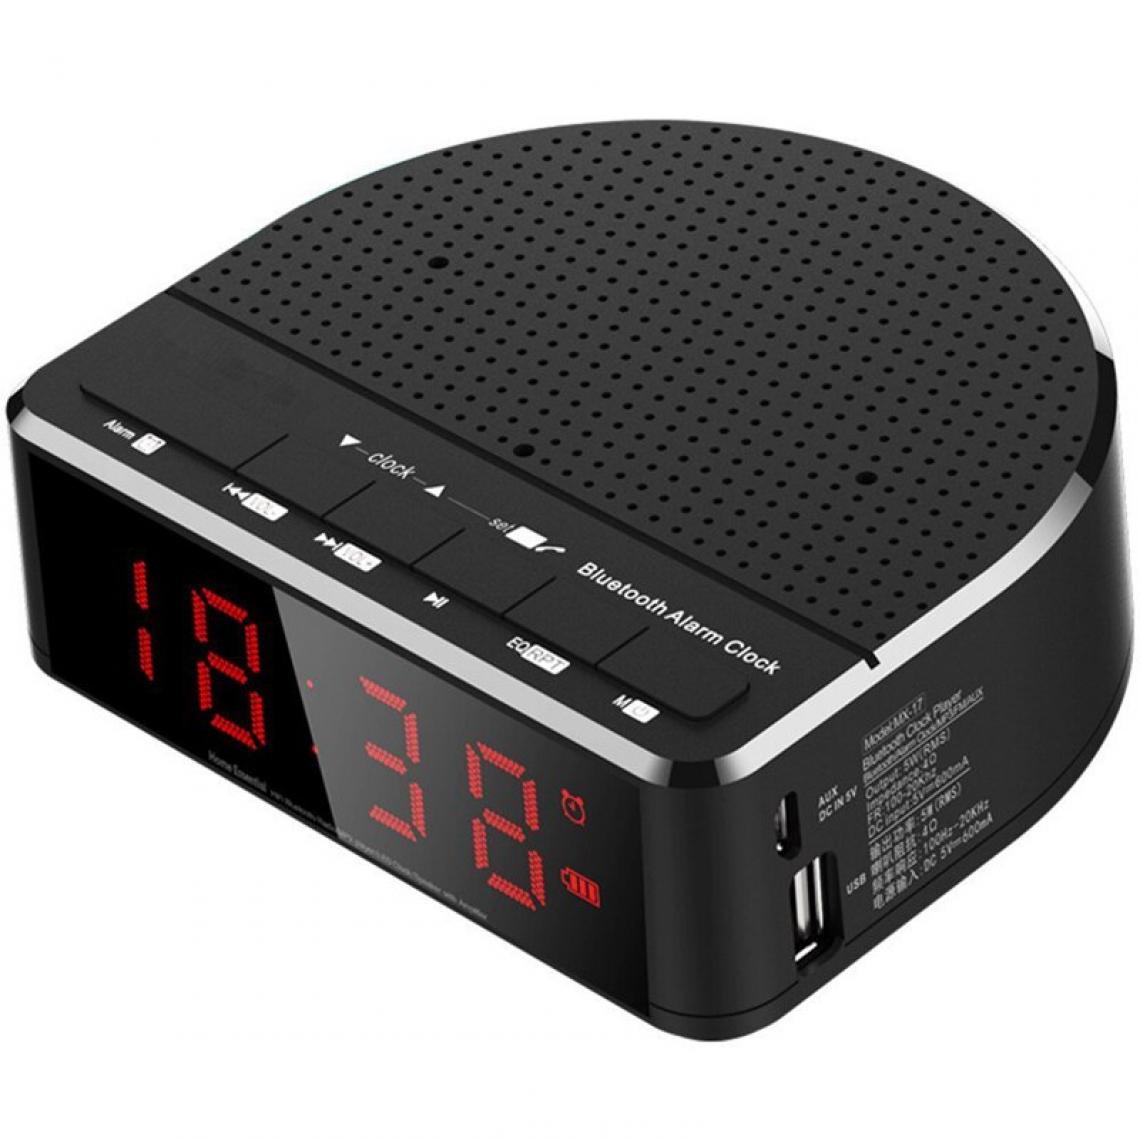 Universal - Radio réveil numérique avec haut-parleur Bluetooth, moniteur numérique rouge avec 2 variateurs, radio FM, réveil LED de chevet avec port USB. 124 ; Subwoofer (noir) - Hauts-parleurs